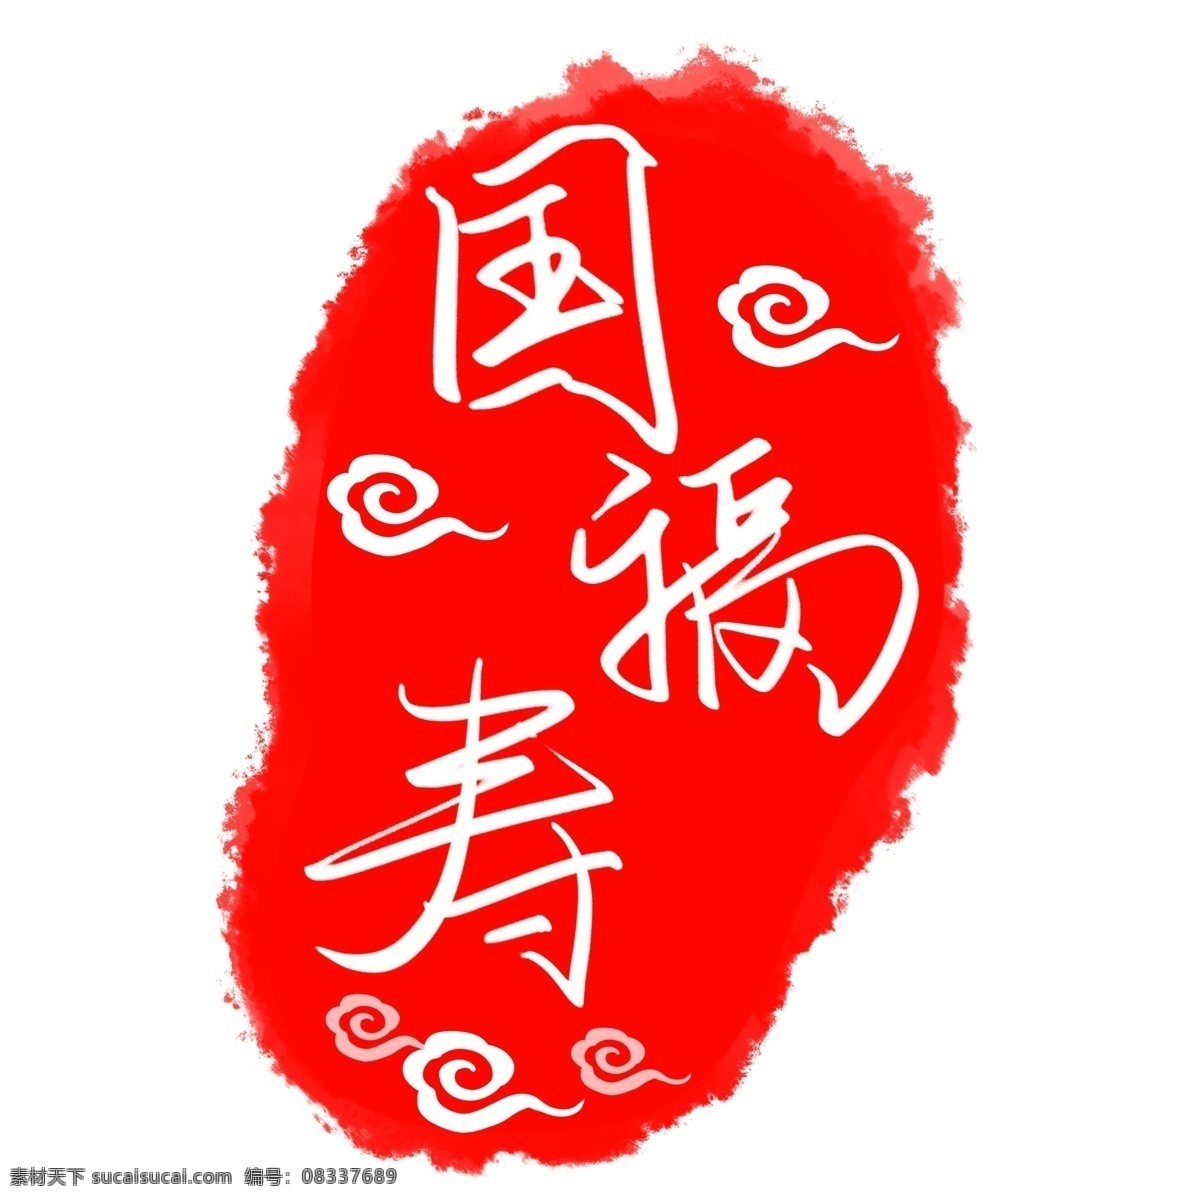 国 寿 福 logo 图 设计图像 国寿福 保险行业 商标 红色图标 商业